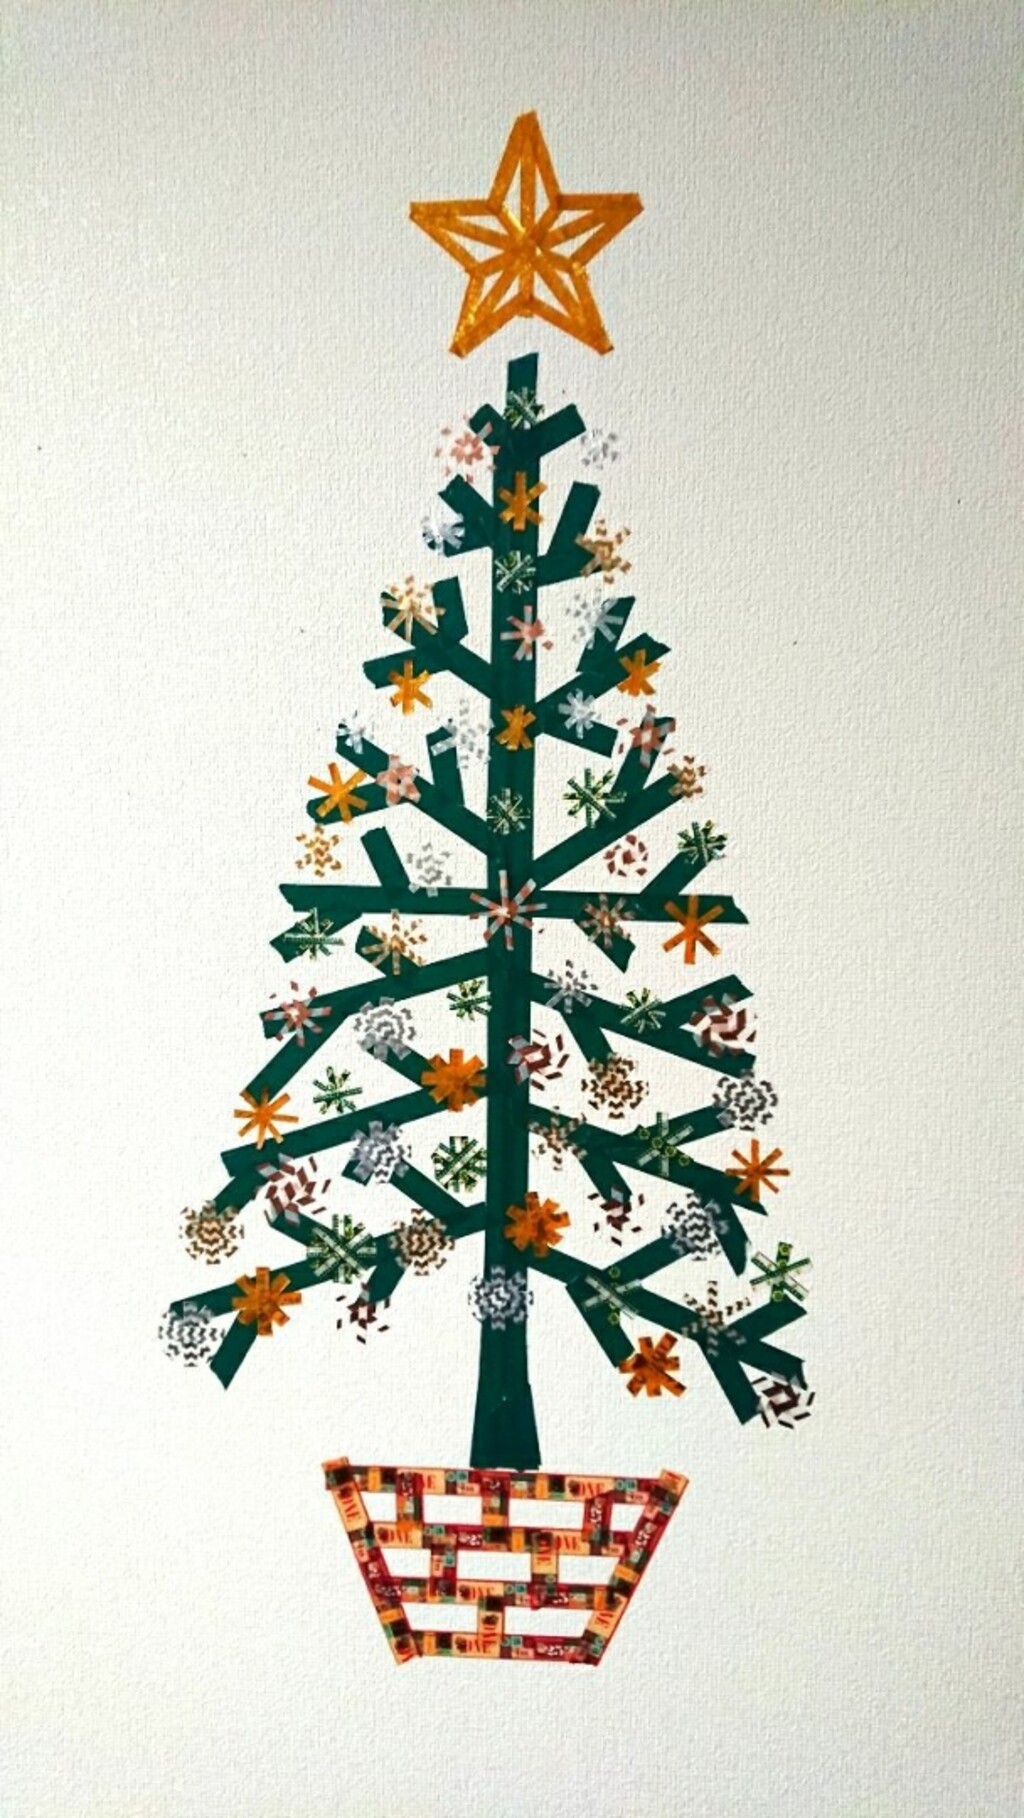 マメが投稿したフォト セリアで買ったマスキングテープで壁に描いたクリスマスツリー 19 12 26 18 12 15 Limia リミア